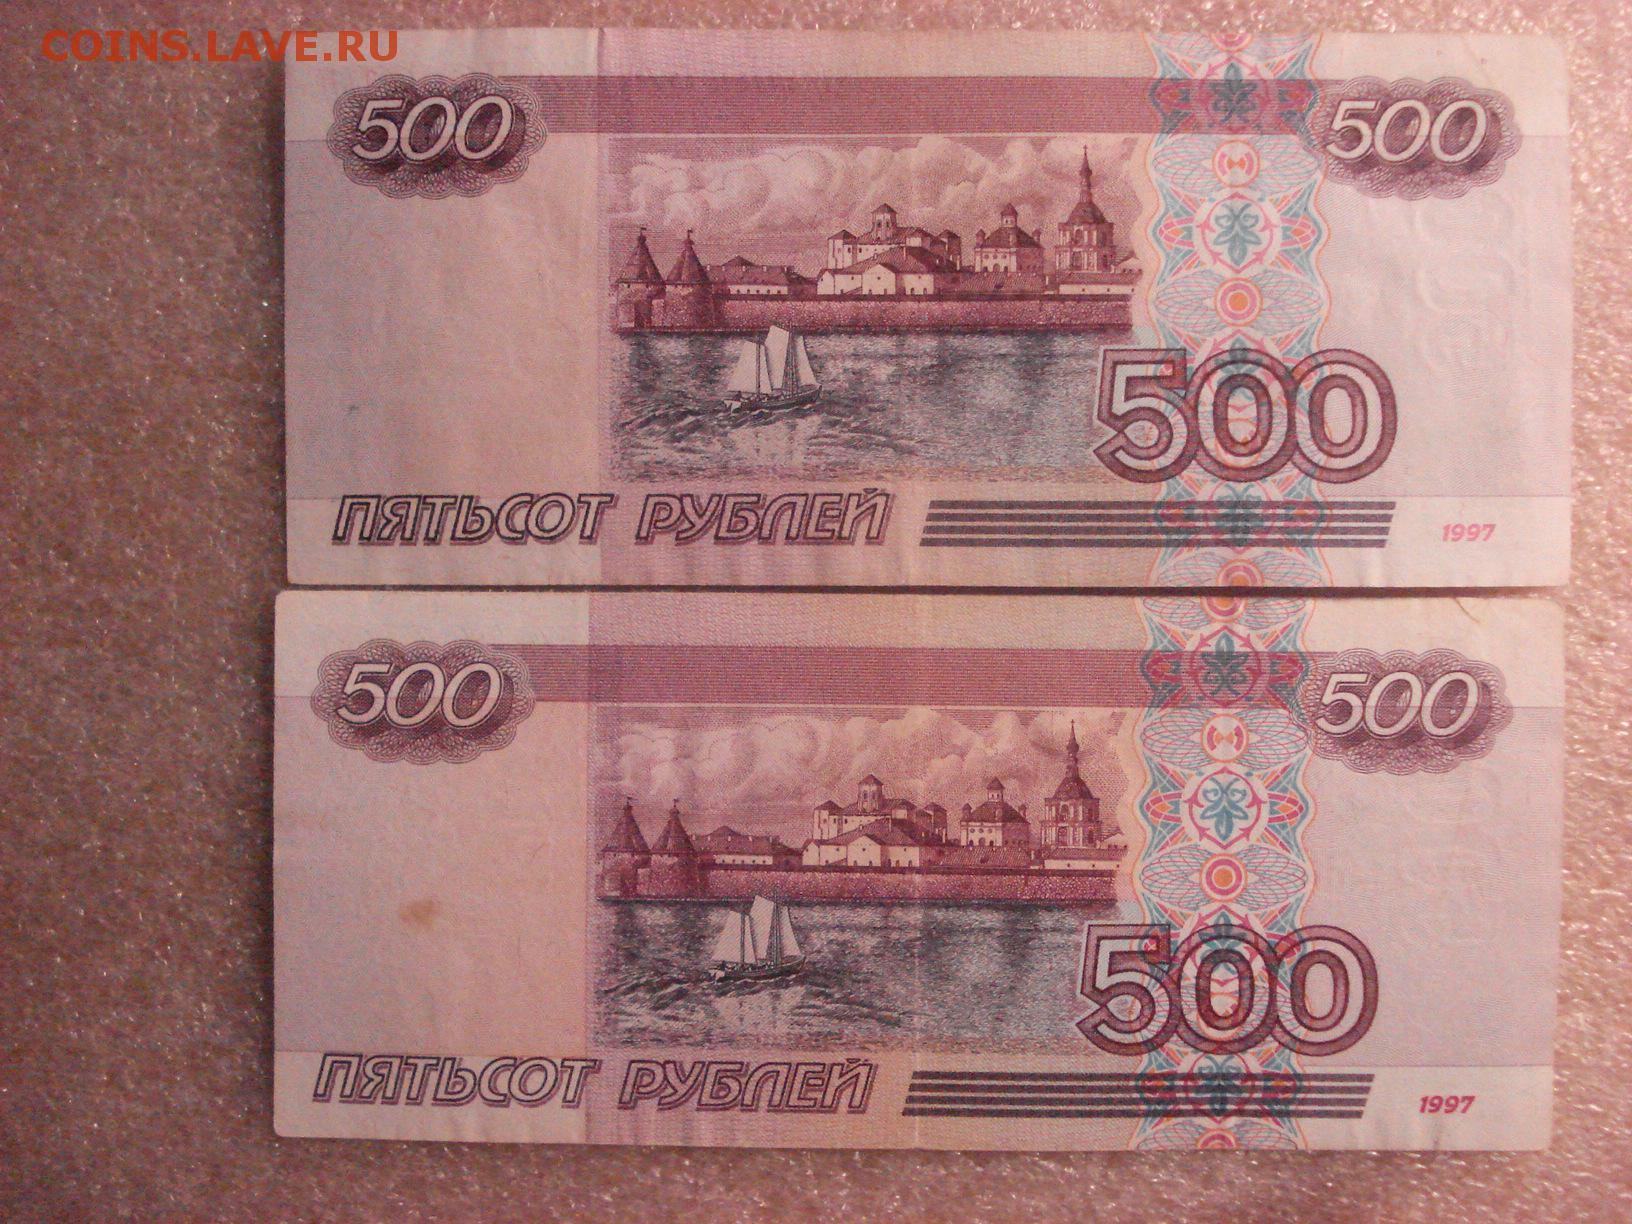 19 500 в рублях. 500р 1997 года без модификации. Купюра 500 рублей. 500 Рублей 1997. 500 И 1000 рублей.